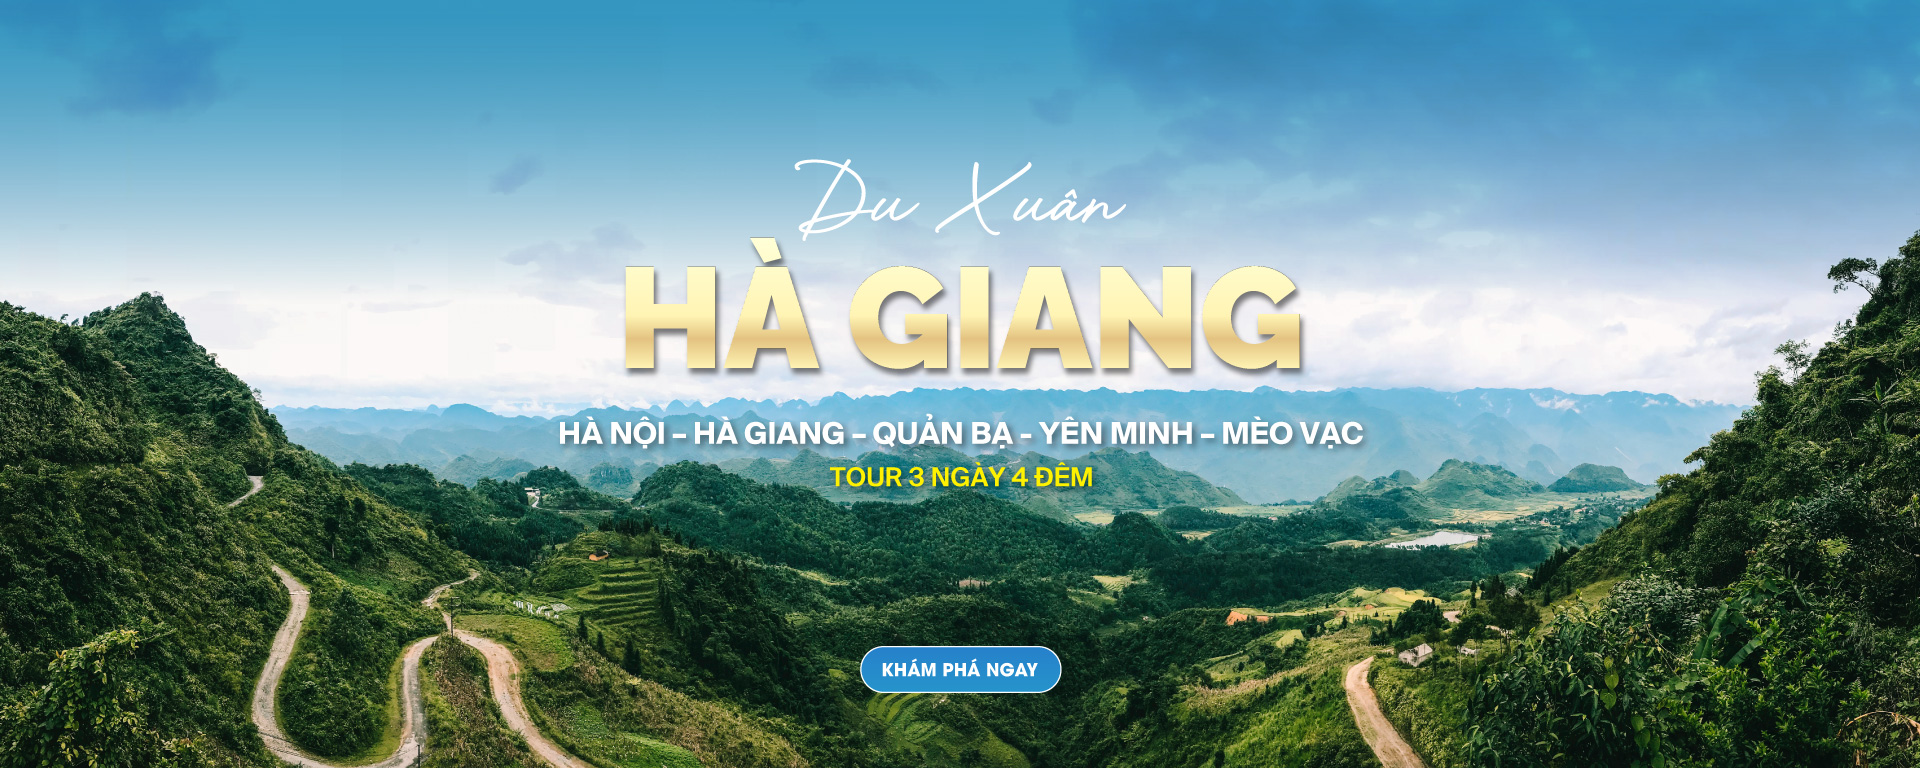 Tour Du Lịch Trải Nghiệm Motorbike Tour Hà Giang